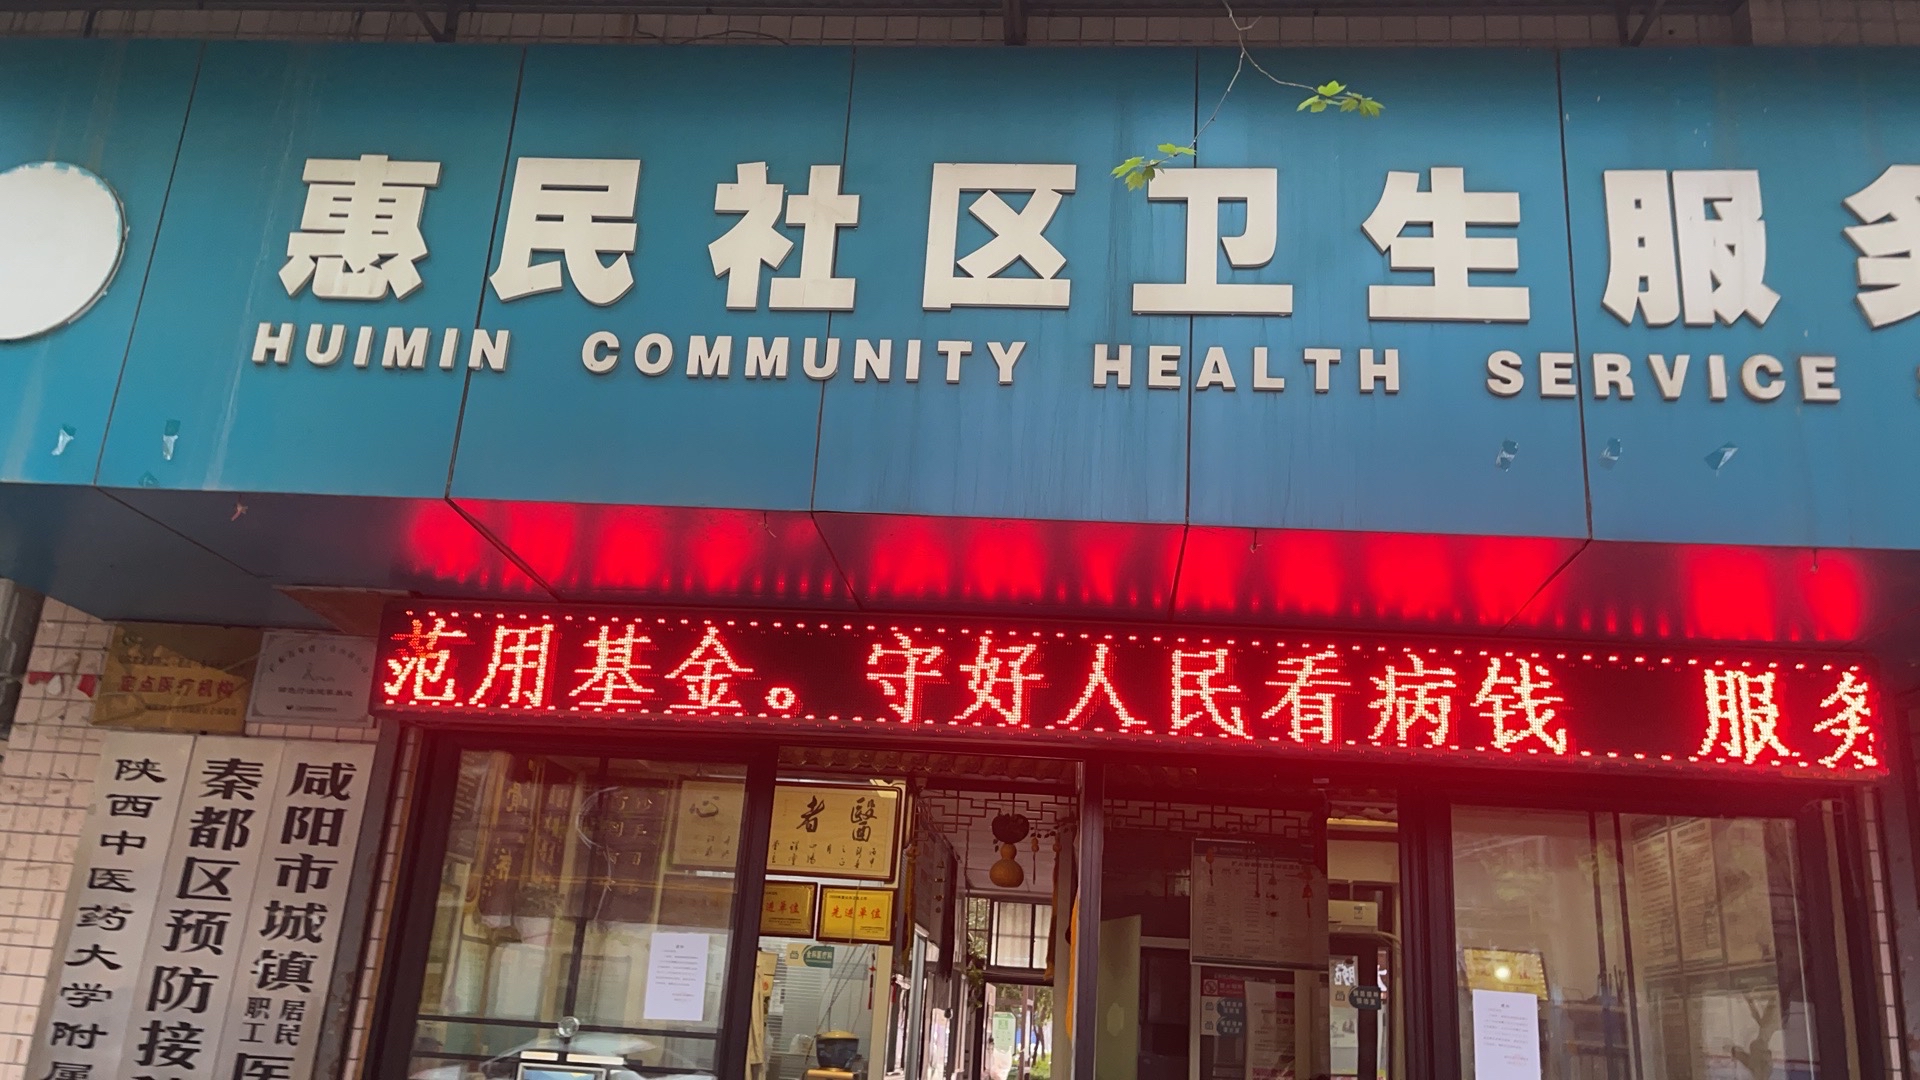 秦都区惠民社区卫生服务站单位图片